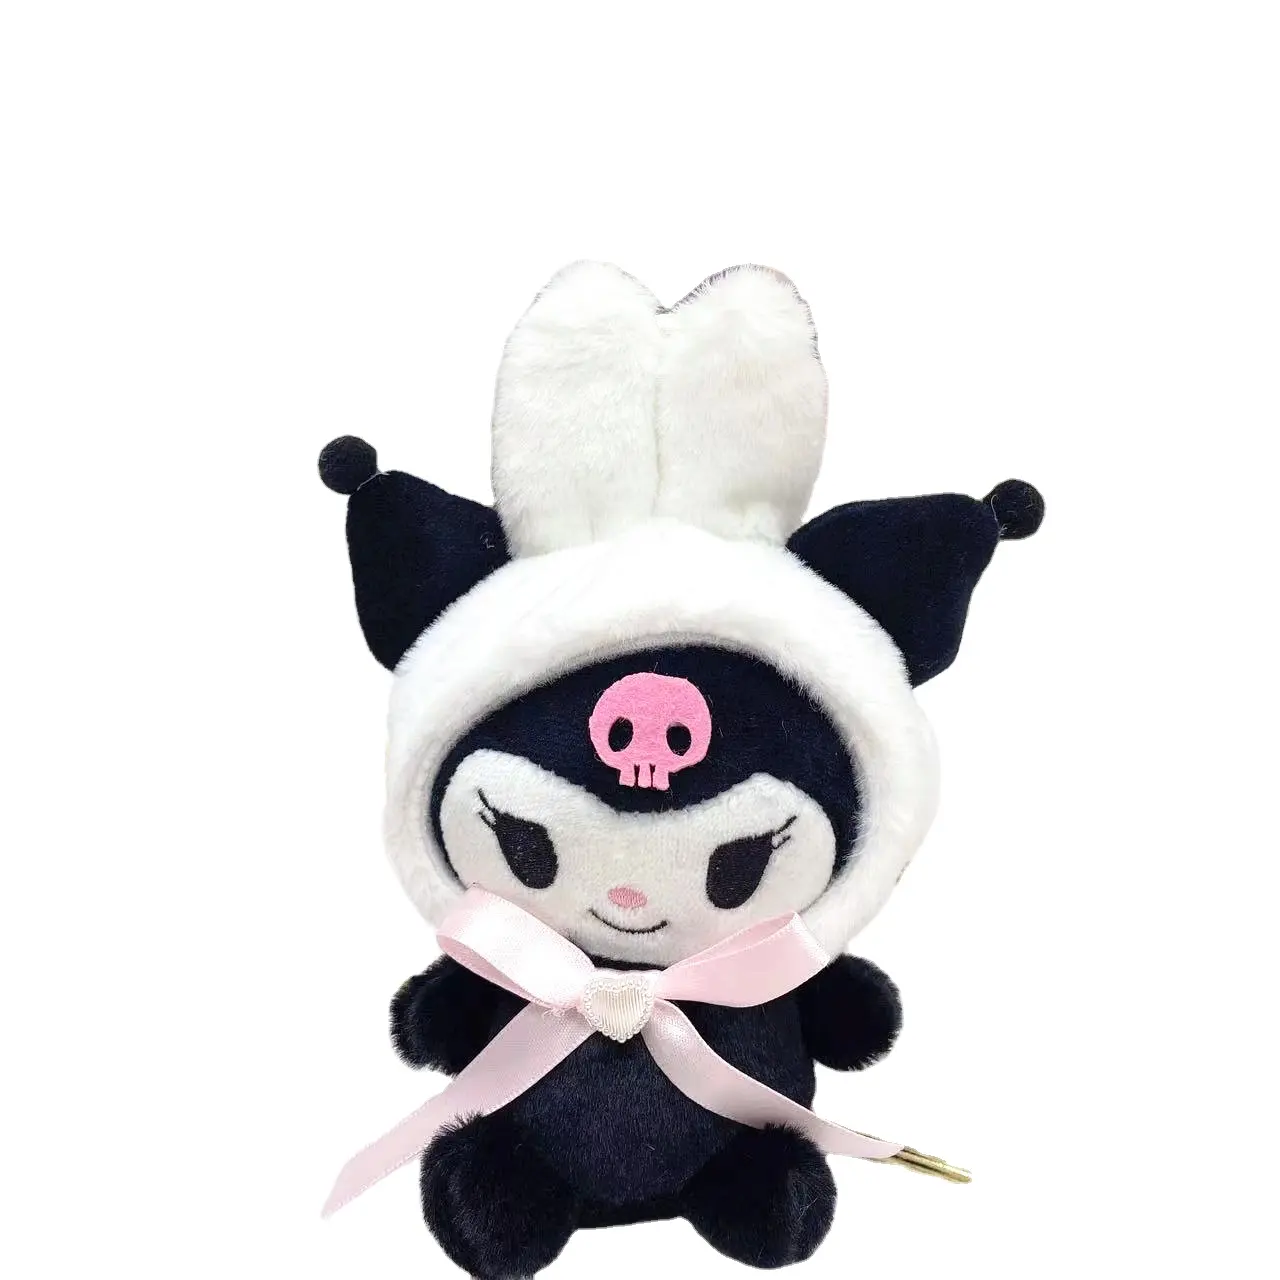 Novo personalizado Kuromi coelho ornamento de pelúcia saco pingente boneca de pelúcia dos desenhos animados anime chaveiro brinquedos de pelúcia para crianças